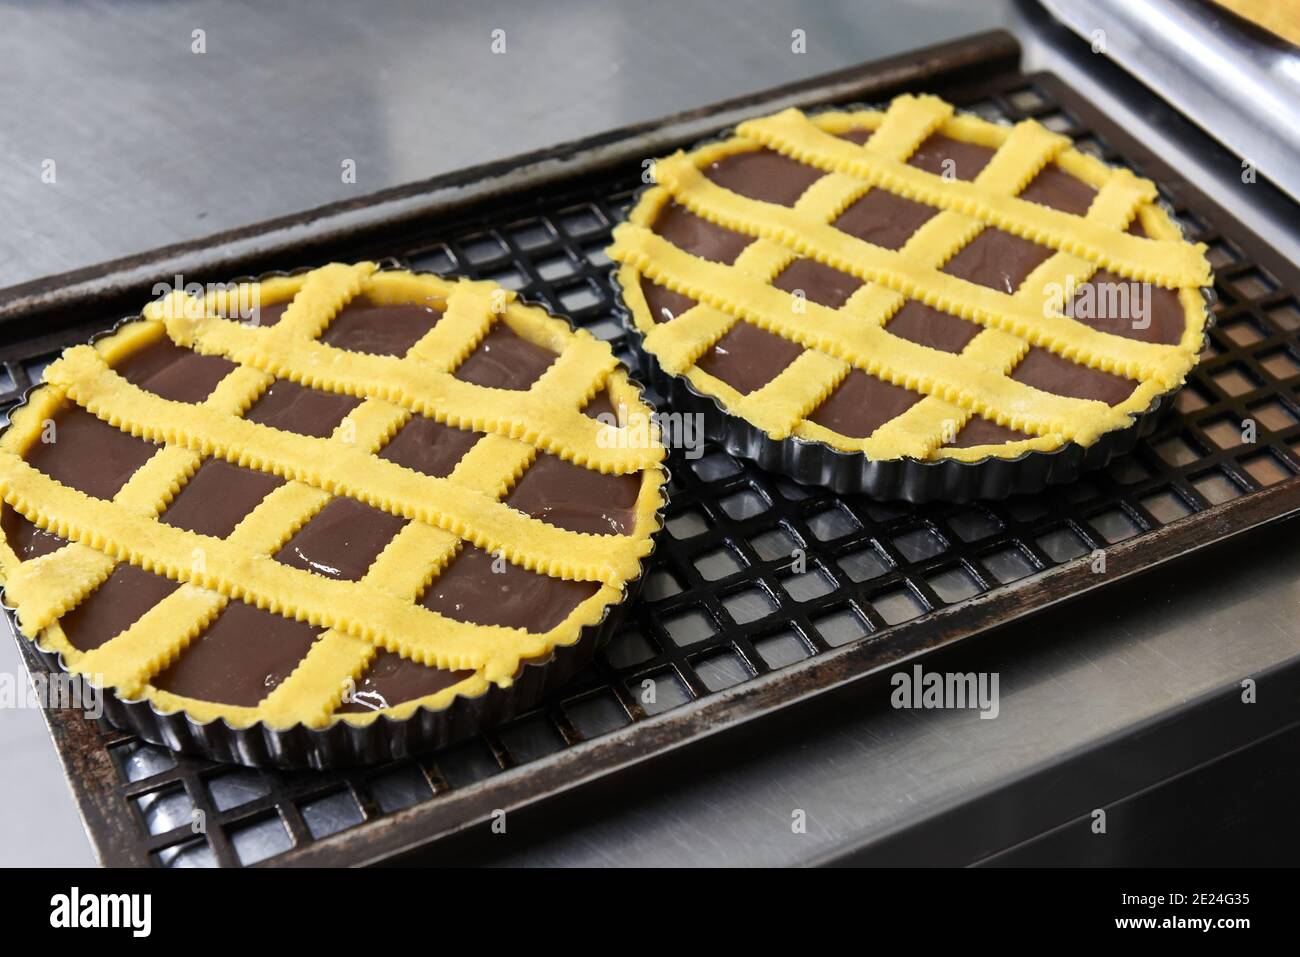 Deux gâteaux ou tartes au chocolat fraîchement cuits sur des plaques de cuisson se tenir sur une grille métallique pour refroidir à la fermeture un grand angle sur un comptoir de cuisine Banque D'Images